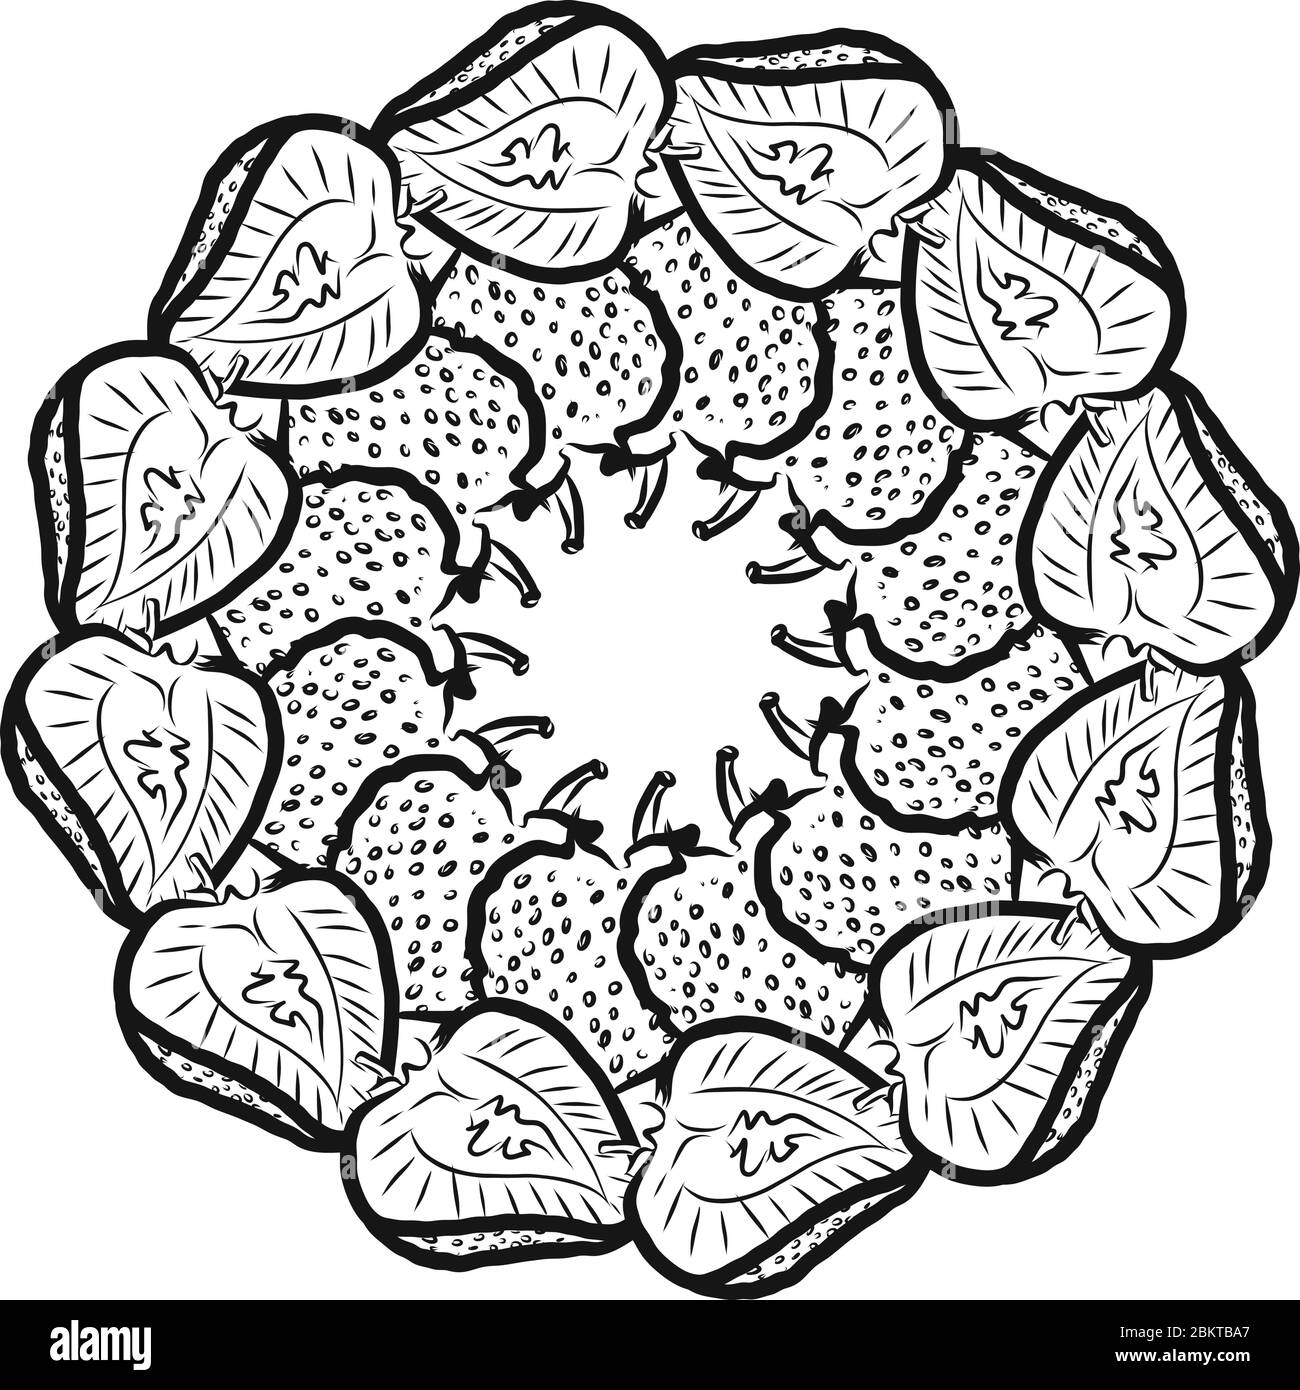 Umriss Version der Erdbeeren in einem Kreis angeordnet. Nahtlose runde Komposition mit handgezogenen Früchten. Vektorgrafik auf Weiß Stock Vektor